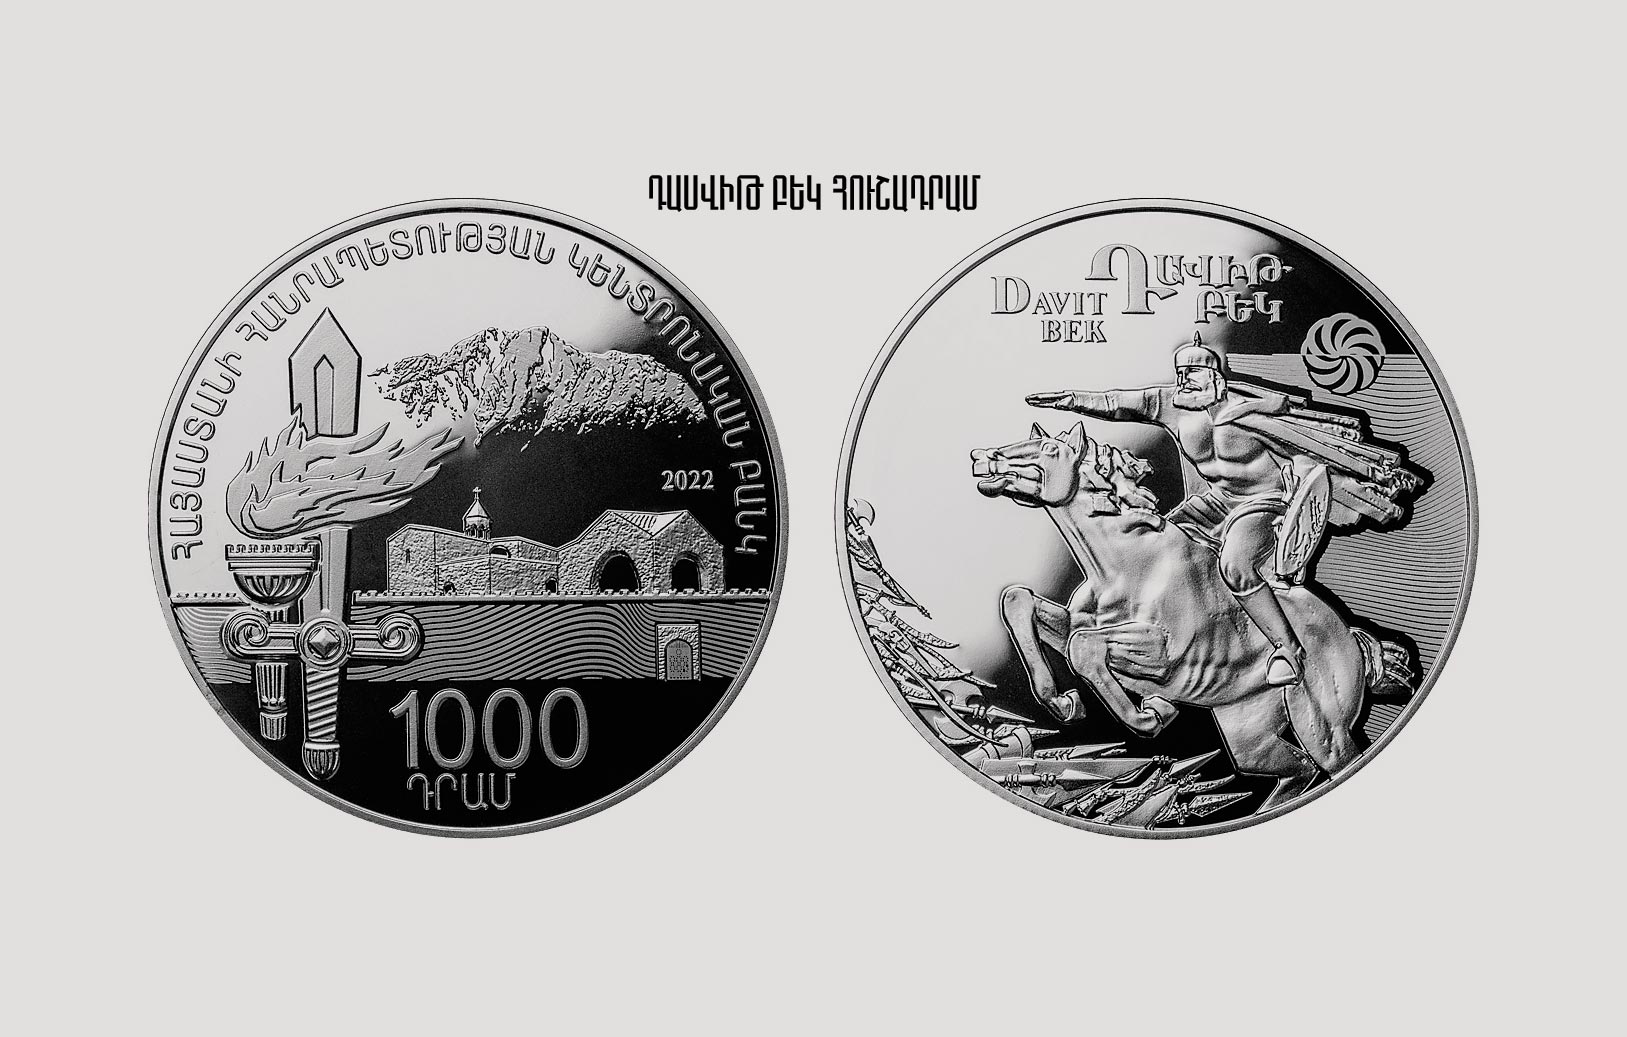 2500 драм в рублях. Армянская монета посвященная землетрясению серебро. Монета Давида Агмашенебели. Центральный банк Республики Армения.